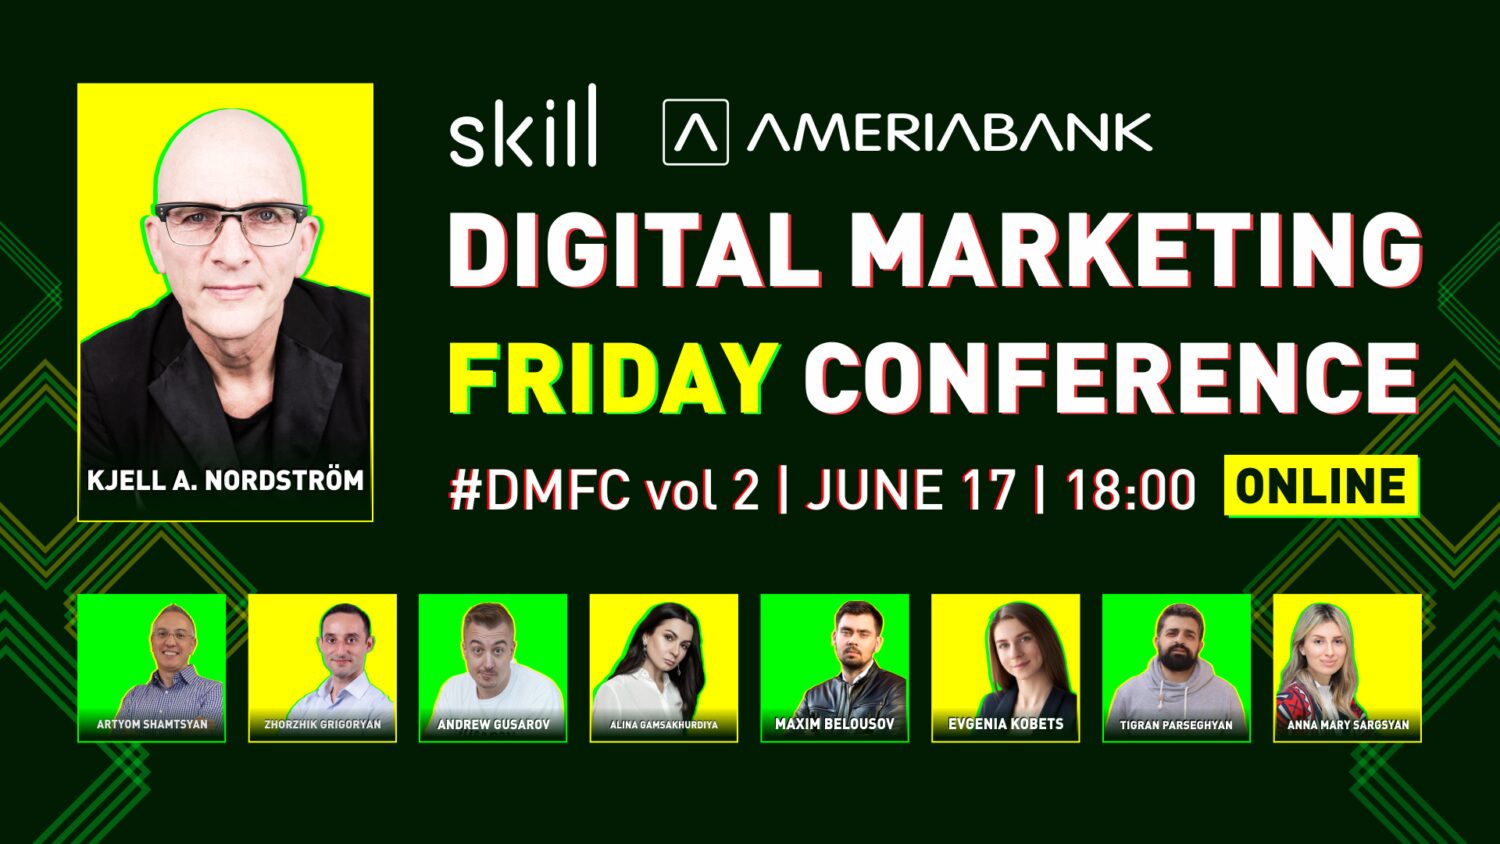 «Digital Marketing Friday Conferance». Գլխավոր բանախոսը շվեդ տնտեսագետ Կյել Նորդստրյոմն է. ՈՒՂԻՂ